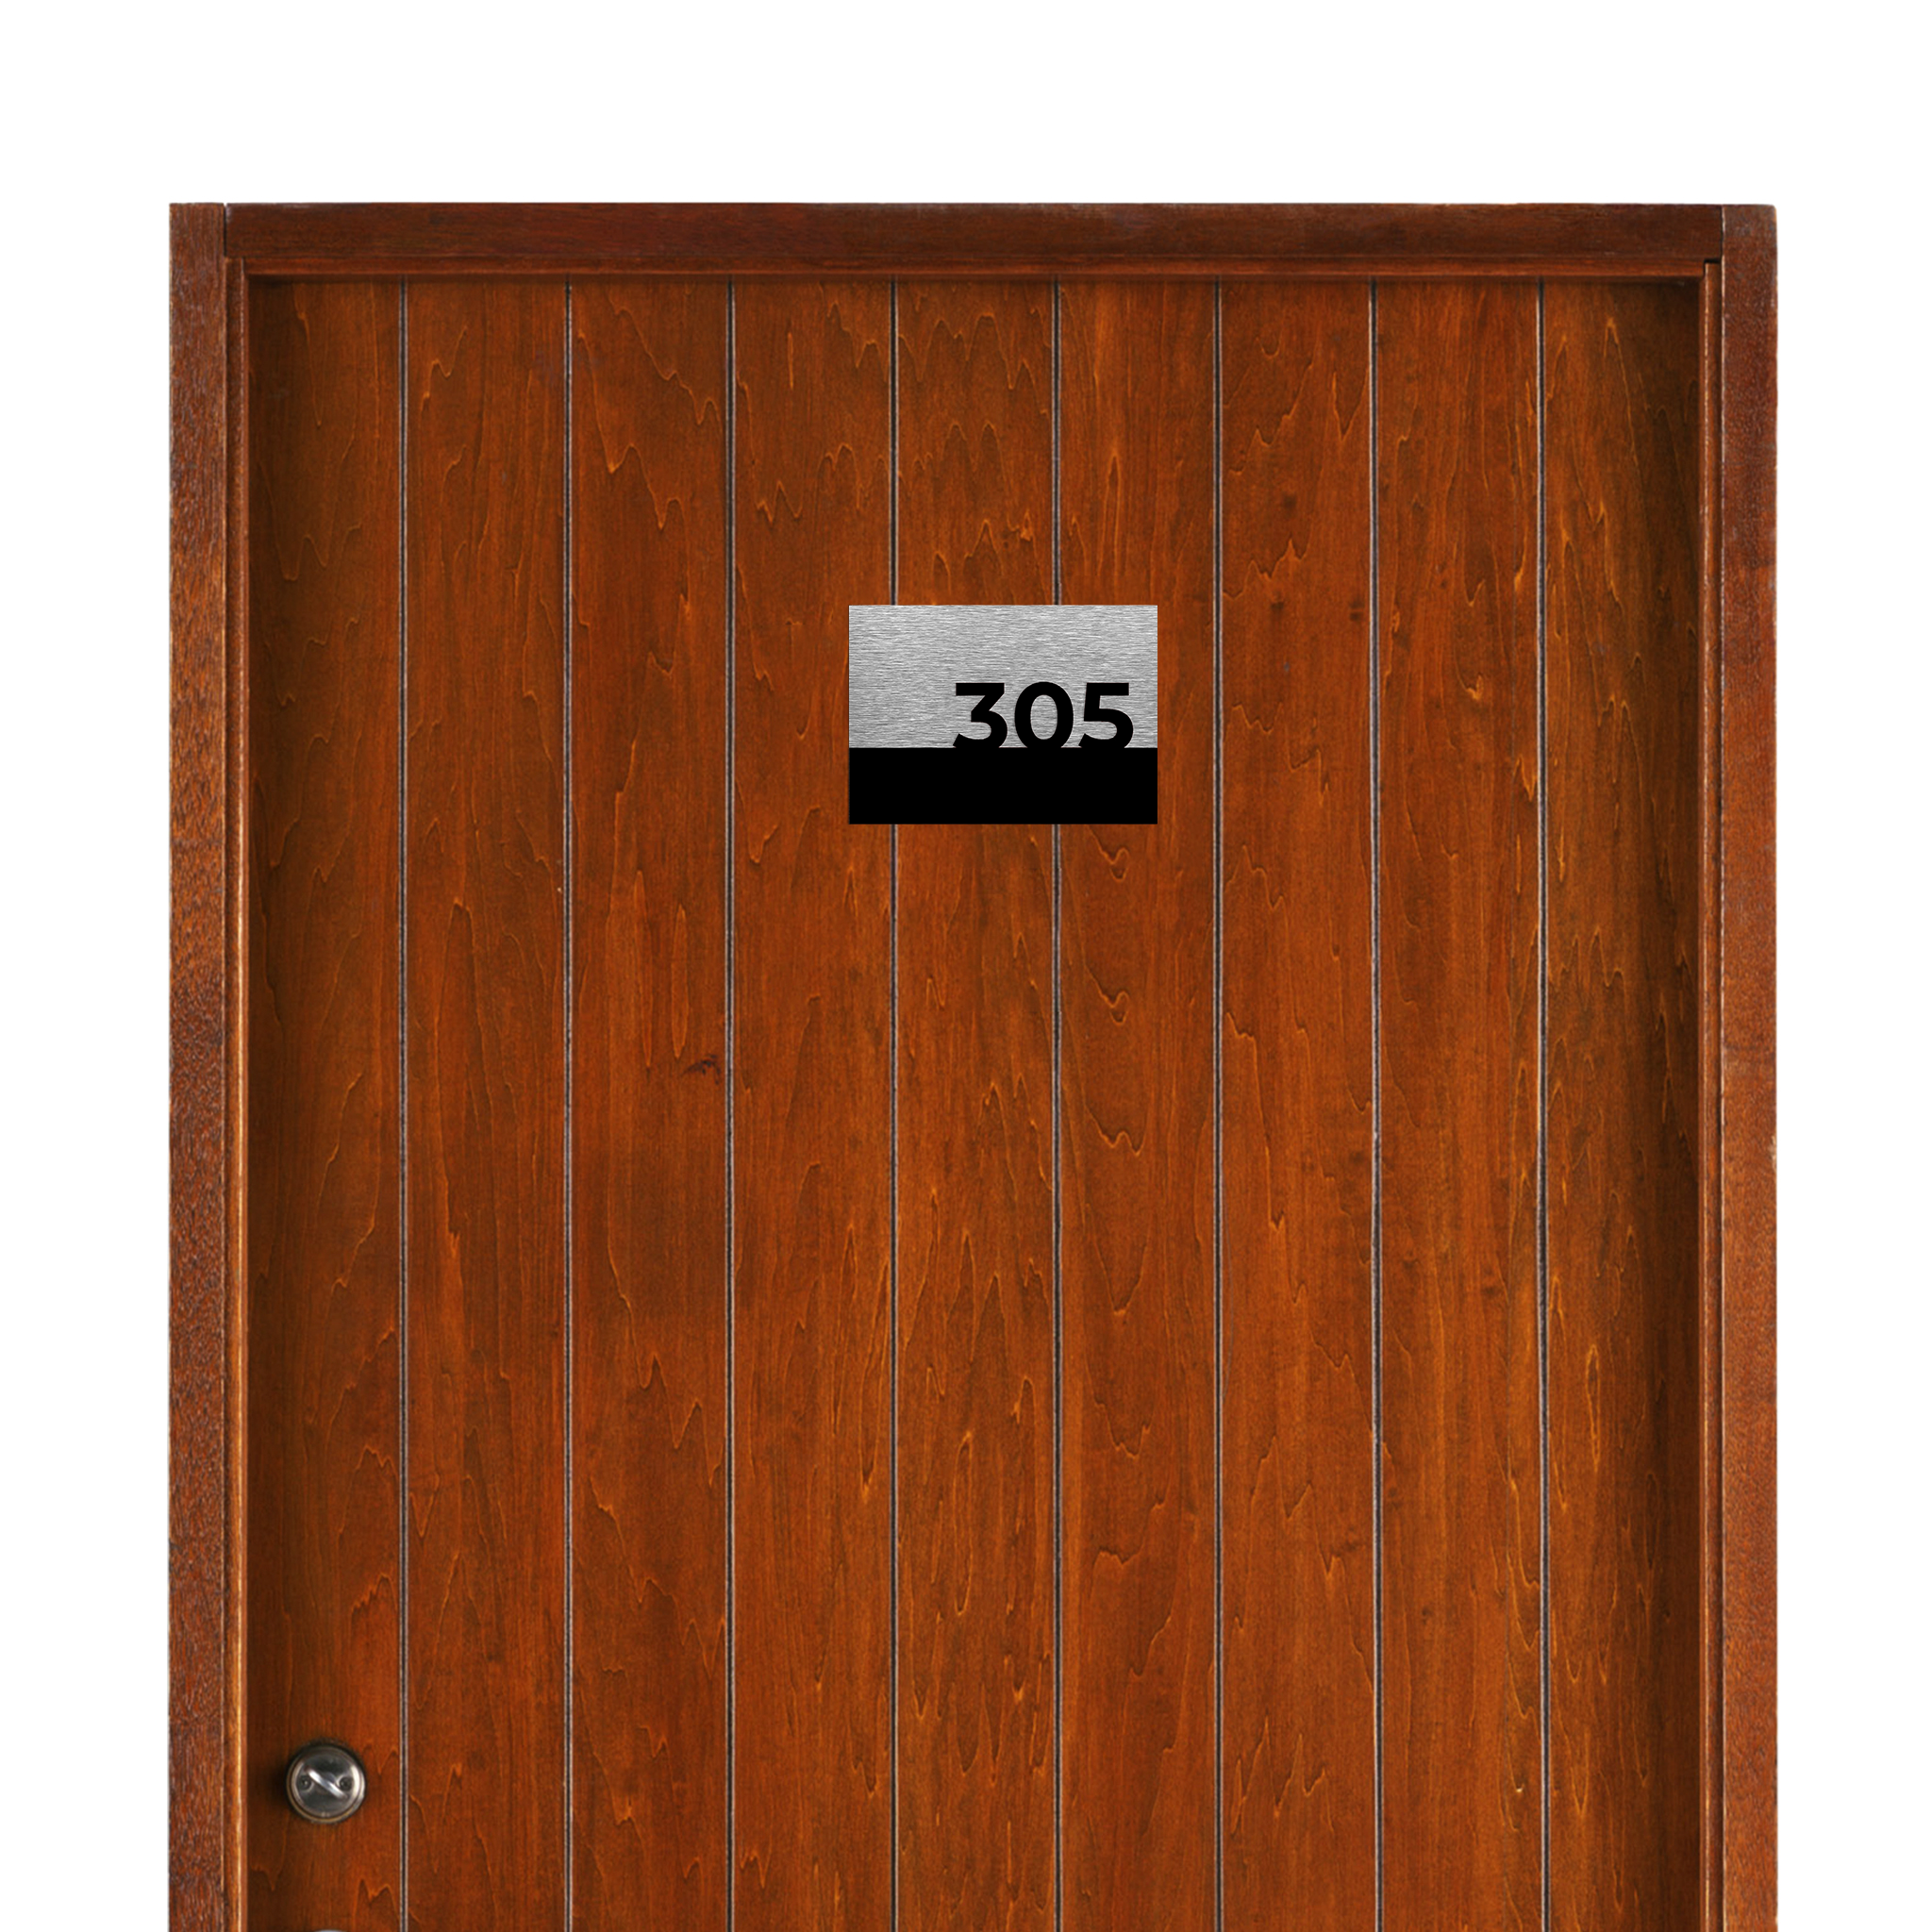 MODERN HOTEL DOOR SIGNS - ALUMADESIGNCO Door Signs - Custom Door Signs For Business & Office